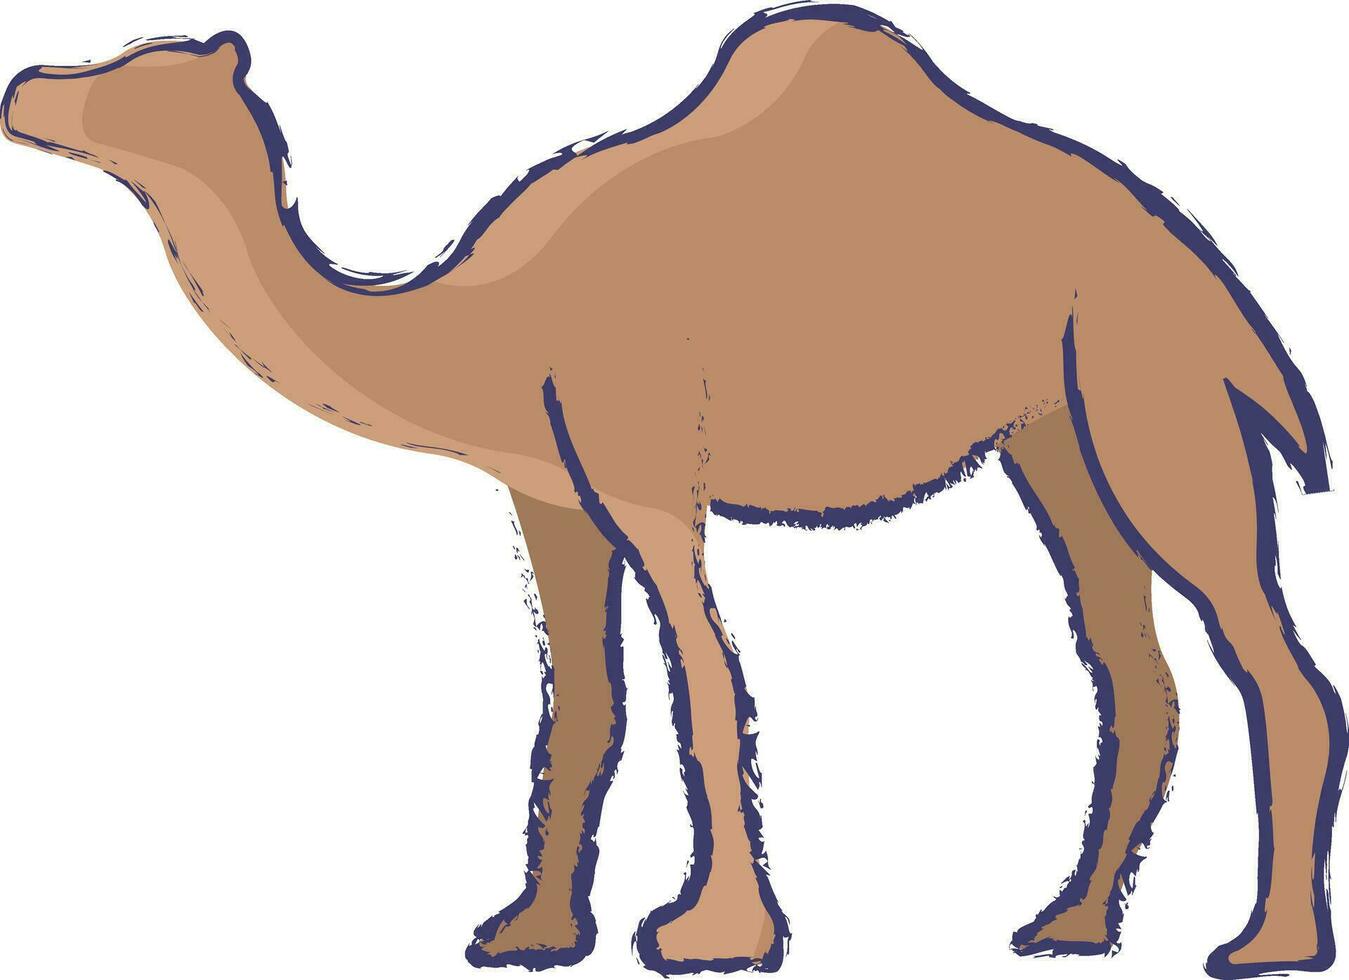 cammello mano disegnato vettore illustrazione